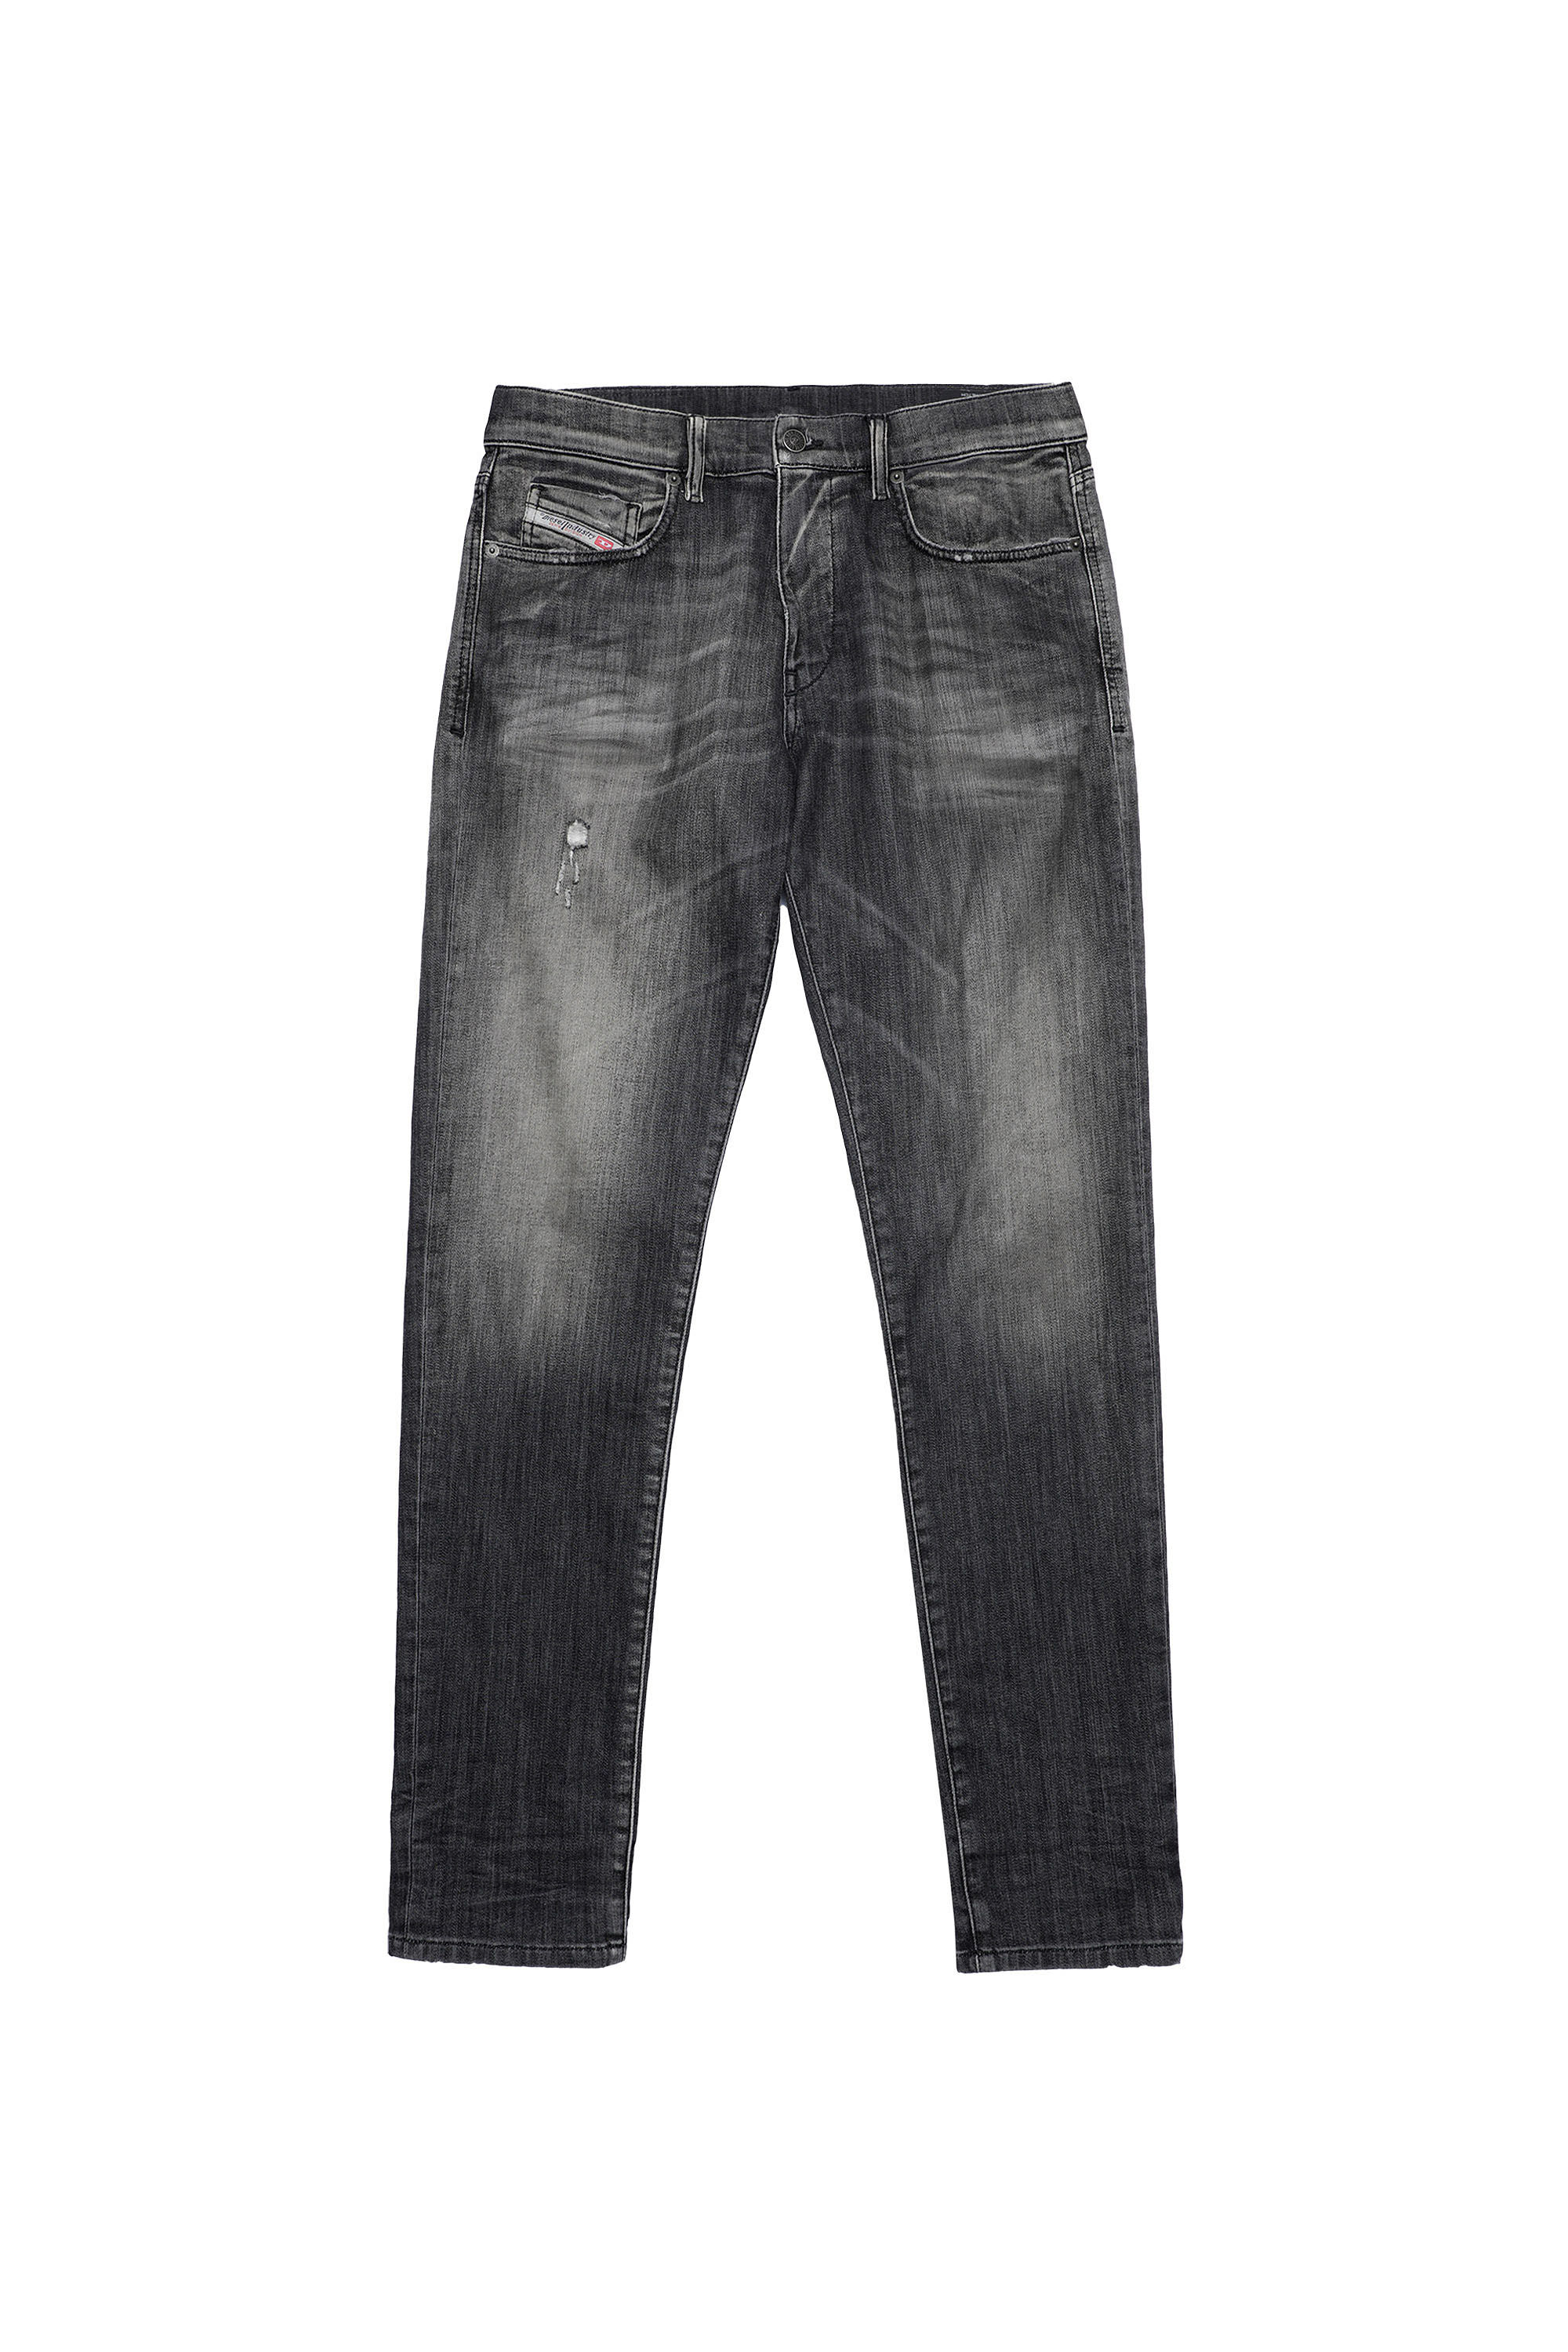 Diesel - D-Strukt JoggJeans® 09B54 Slim, Noir/Gris foncé - Image 2